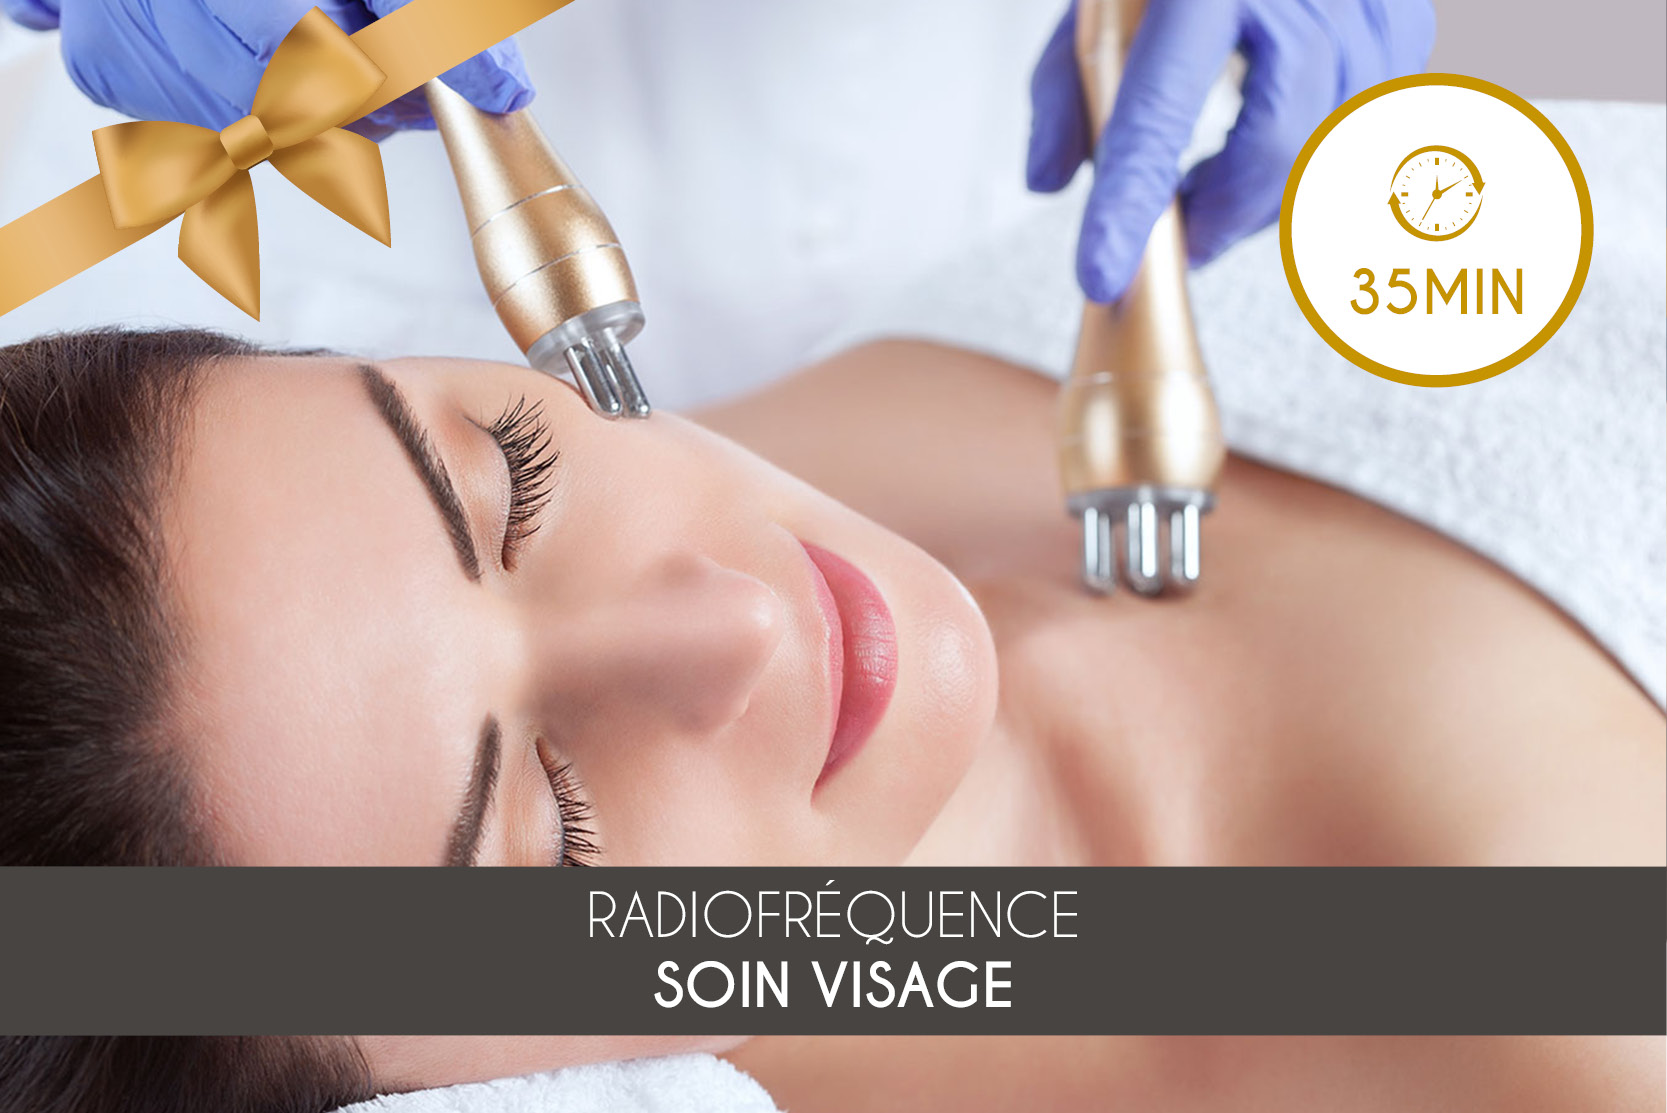 Soin Visage - Radiofréquence (35min)